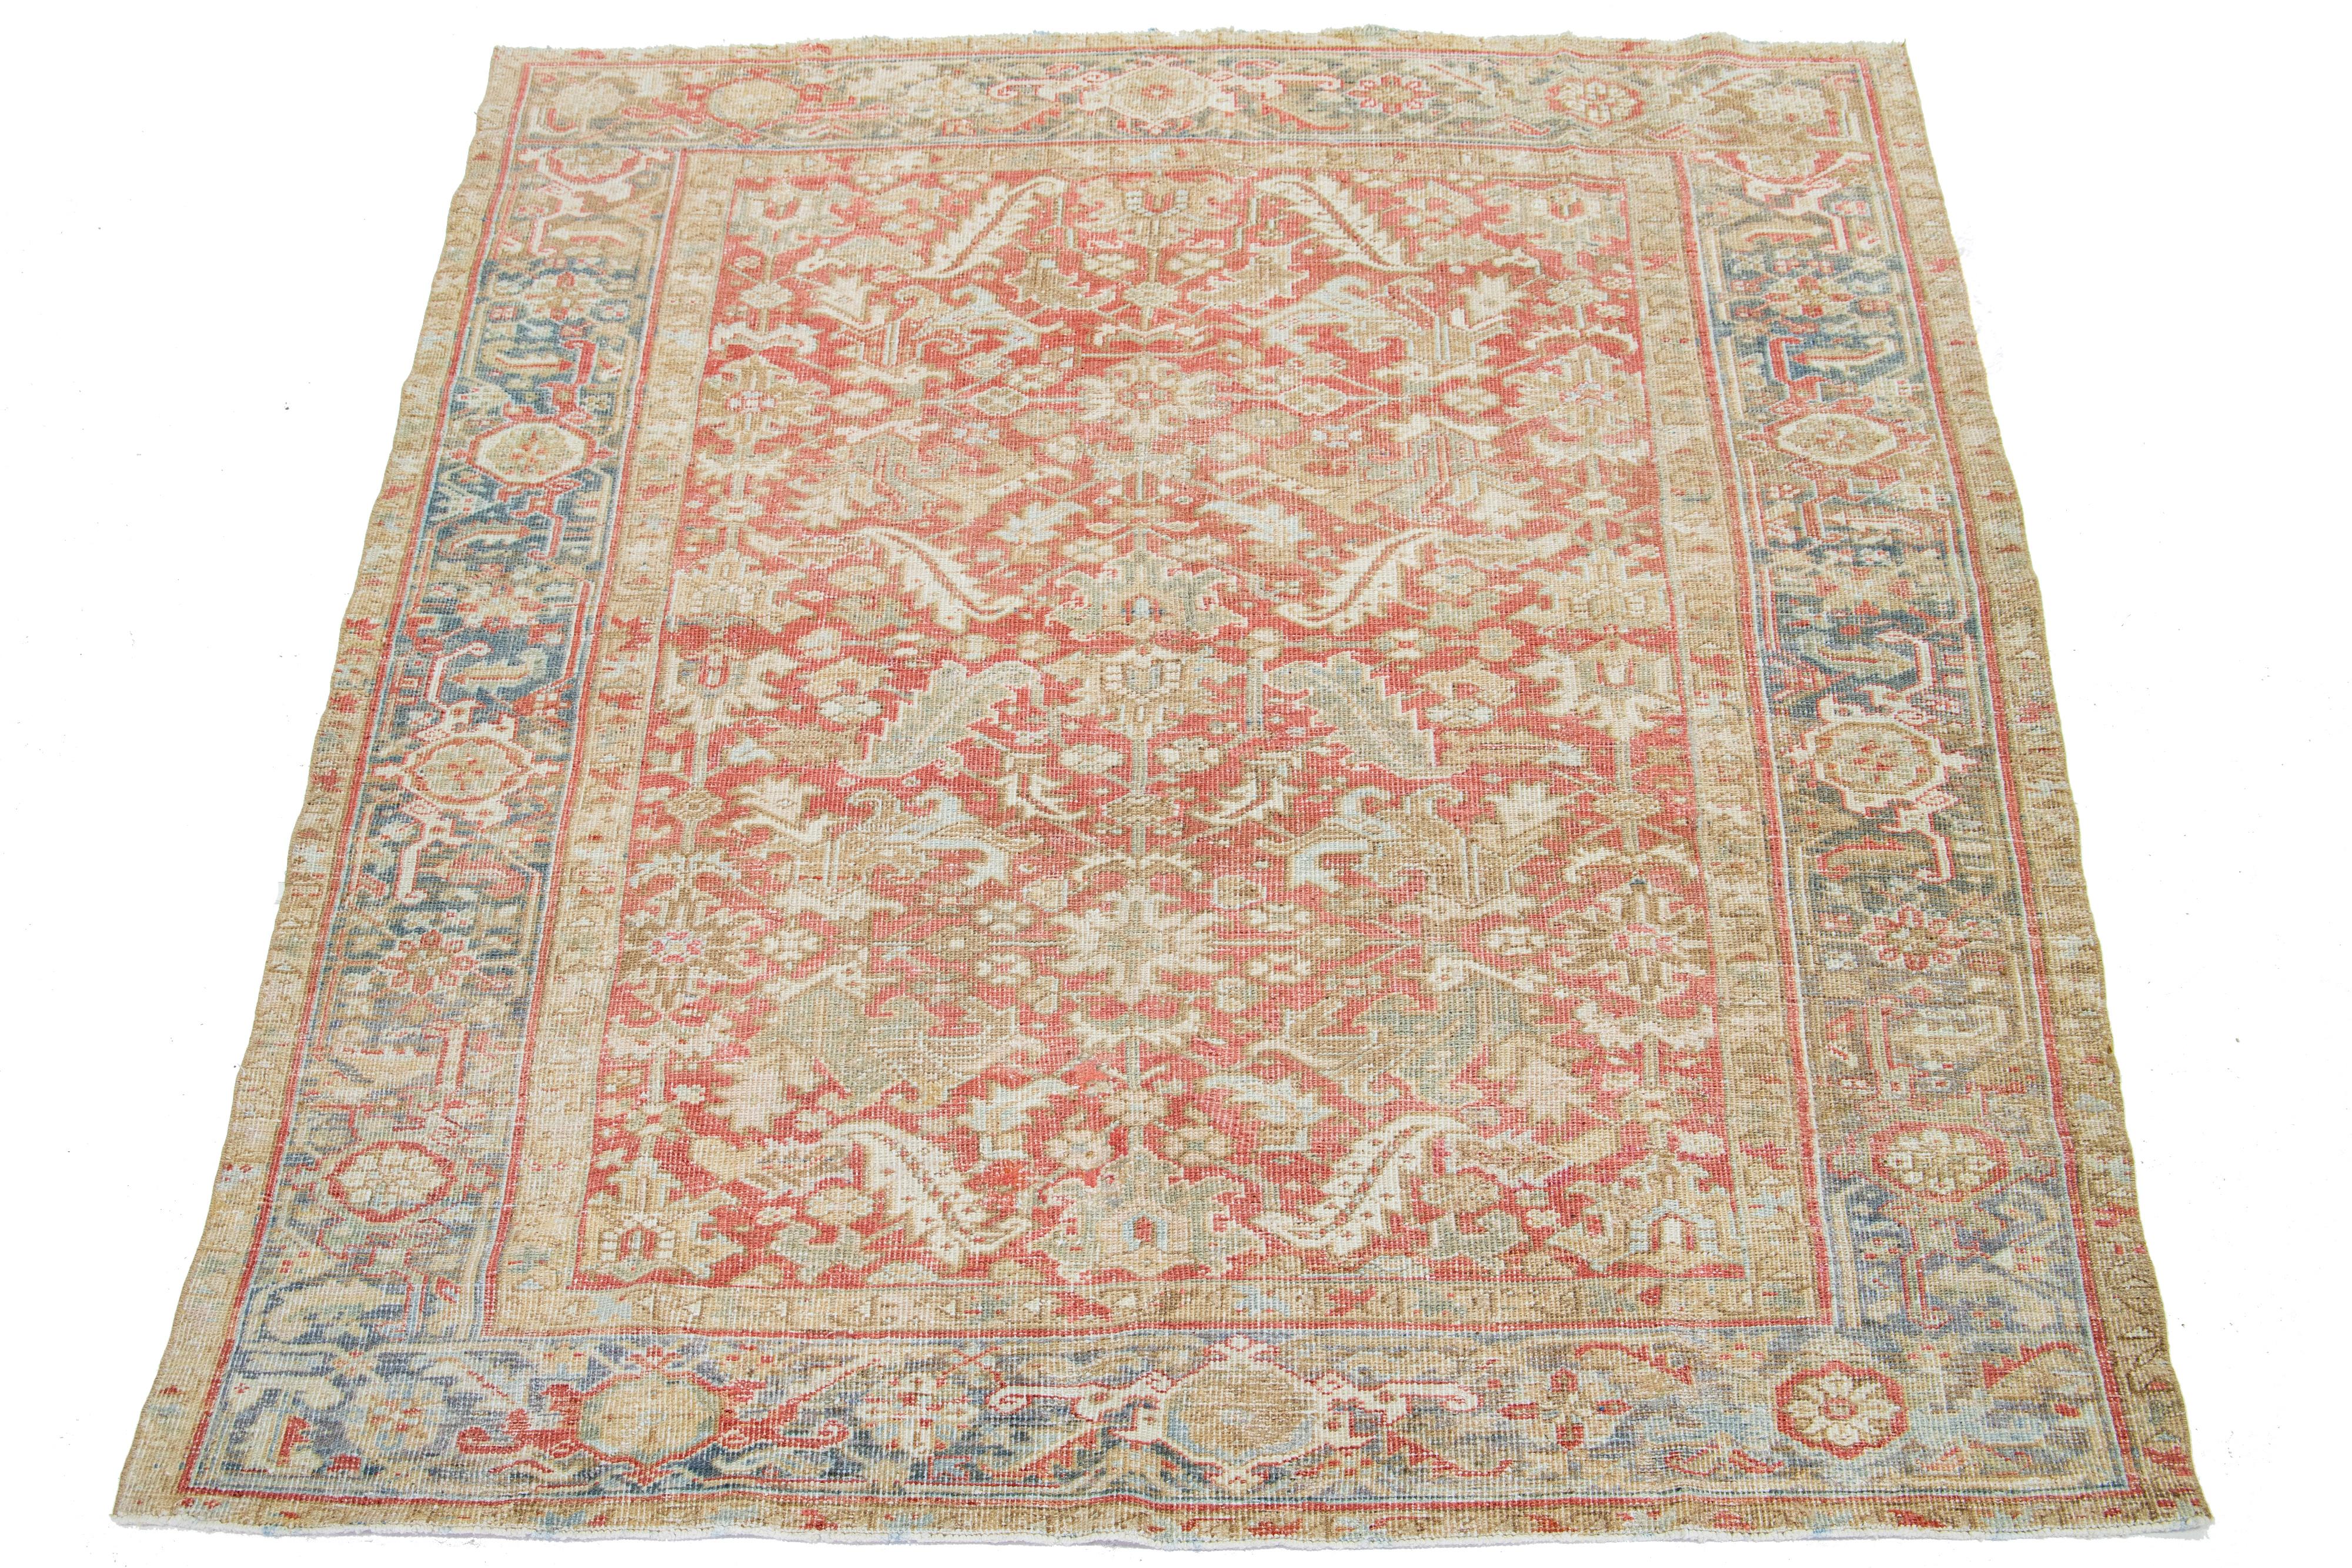 Dieser antike persische Heriz-Teppich ist aus handgeknüpfter Wolle gefertigt. Das rostfarbene Feld besticht durch ein Allover-Muster, das mit Blau-, Beige- und Brauntönen verziert ist.

Dieser Teppich misst 7'1